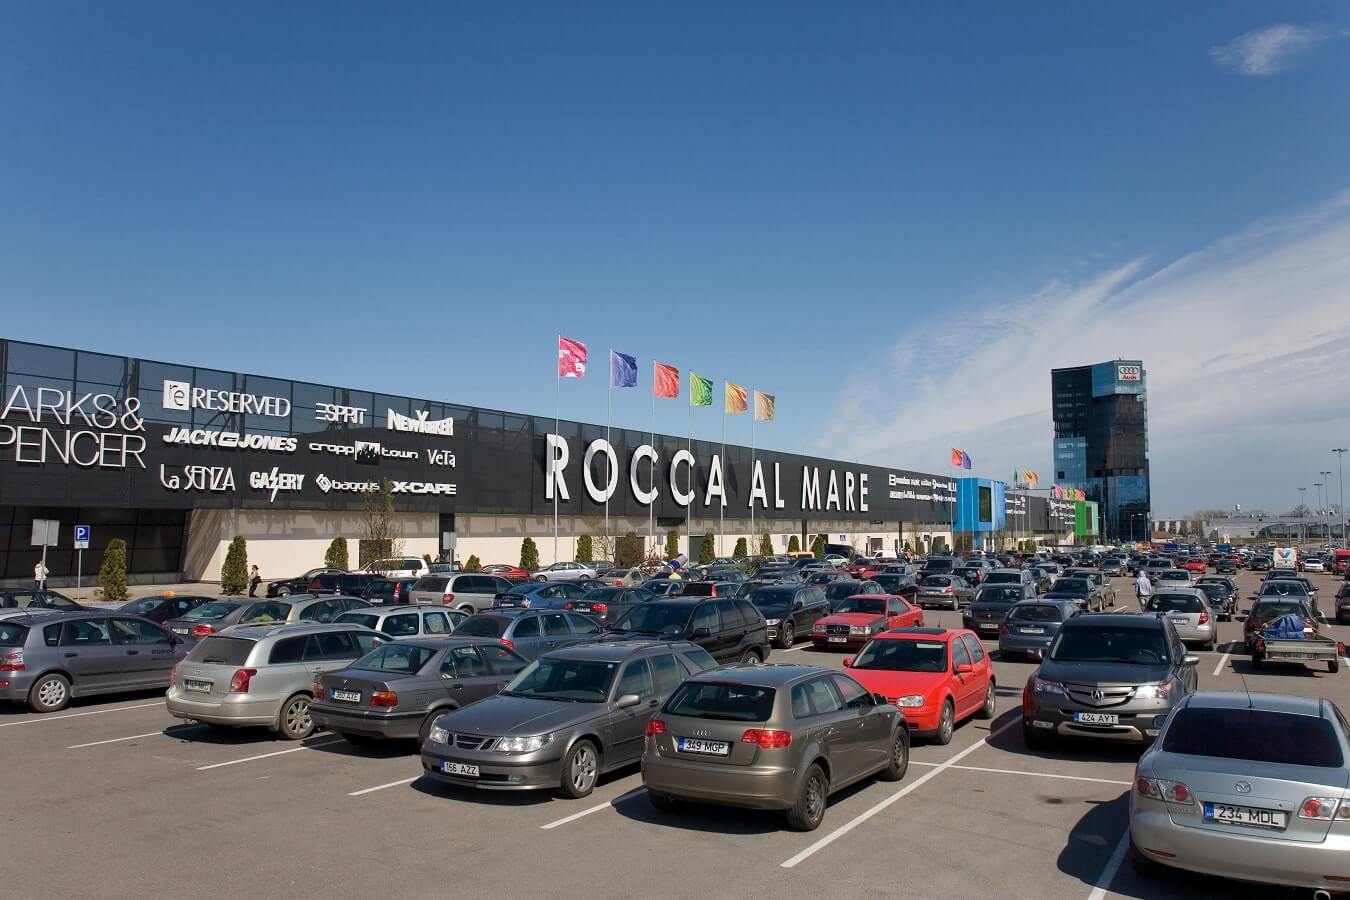 Торговый центр Rocca al Mare